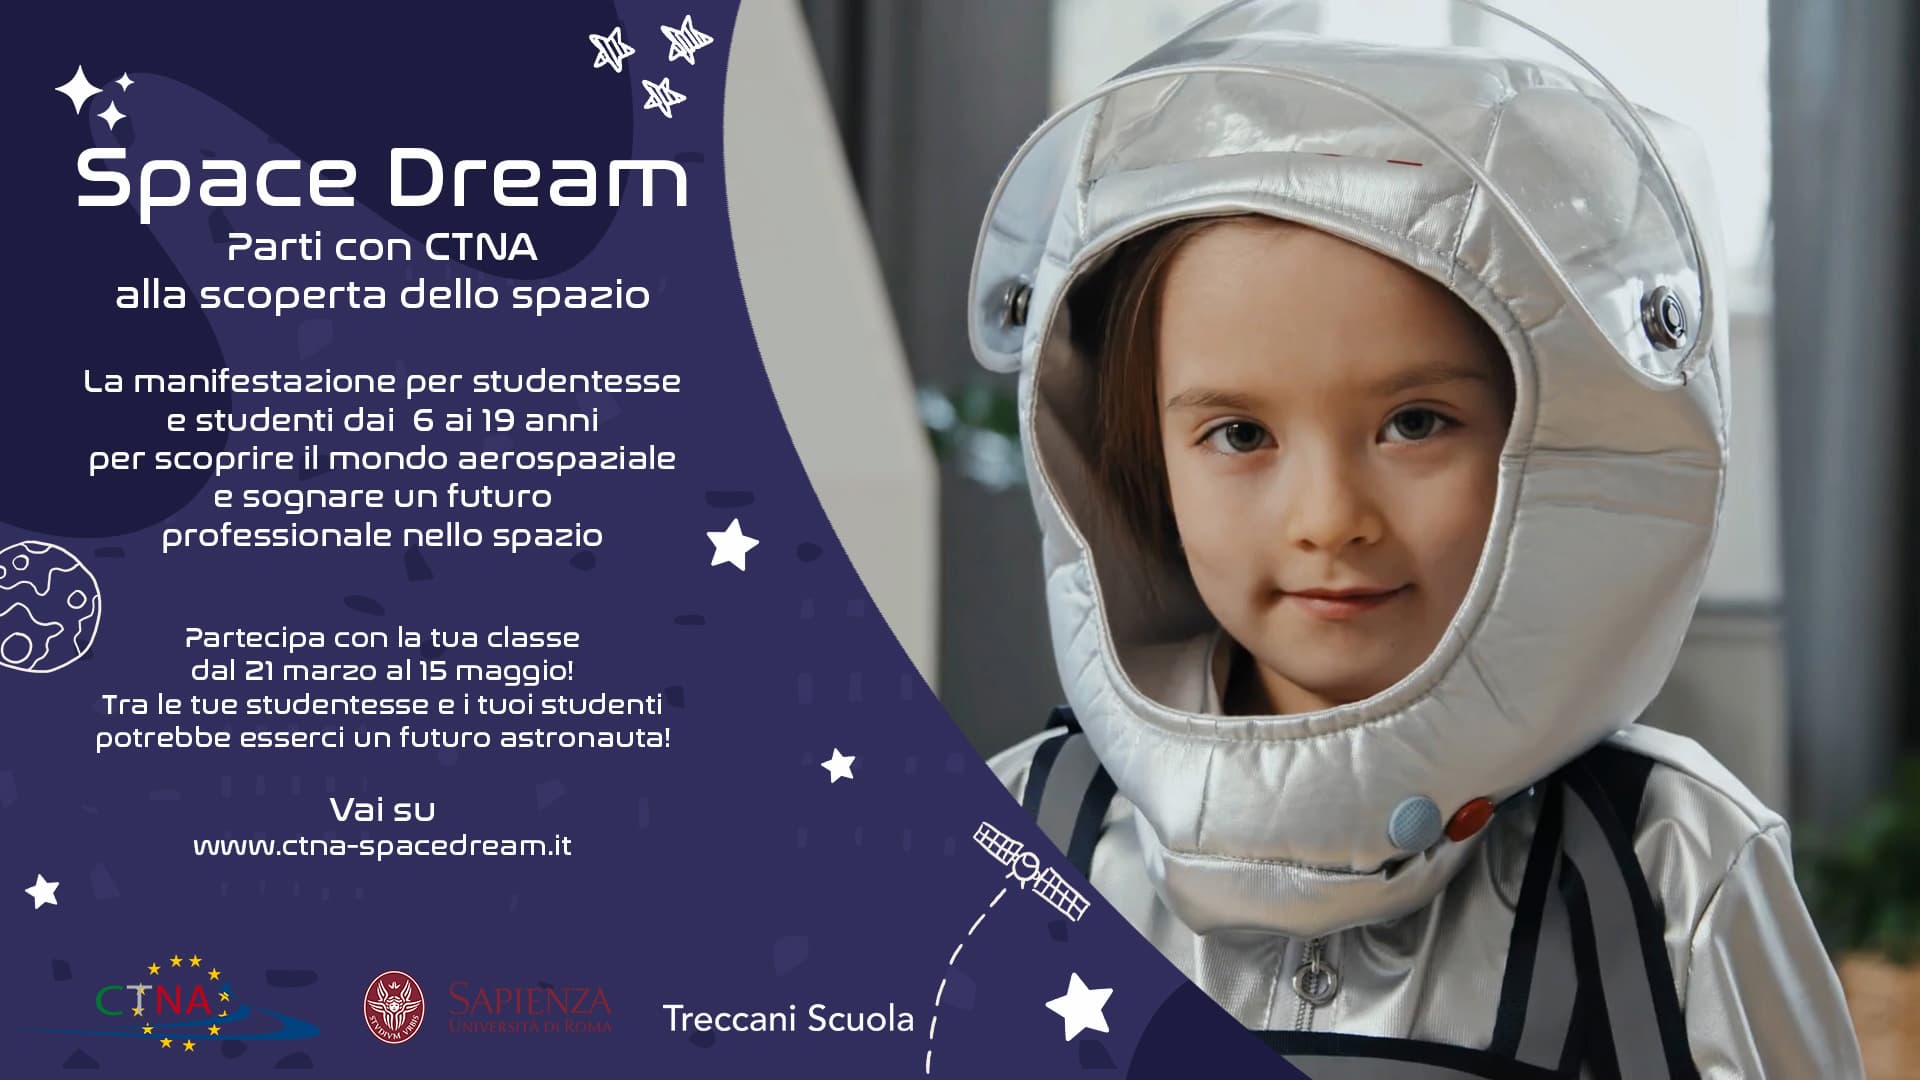 Torna “Space Dream”, l’iniziativa di CTNA con l’Università “La Sapienza” per portare le scuole nello spazio